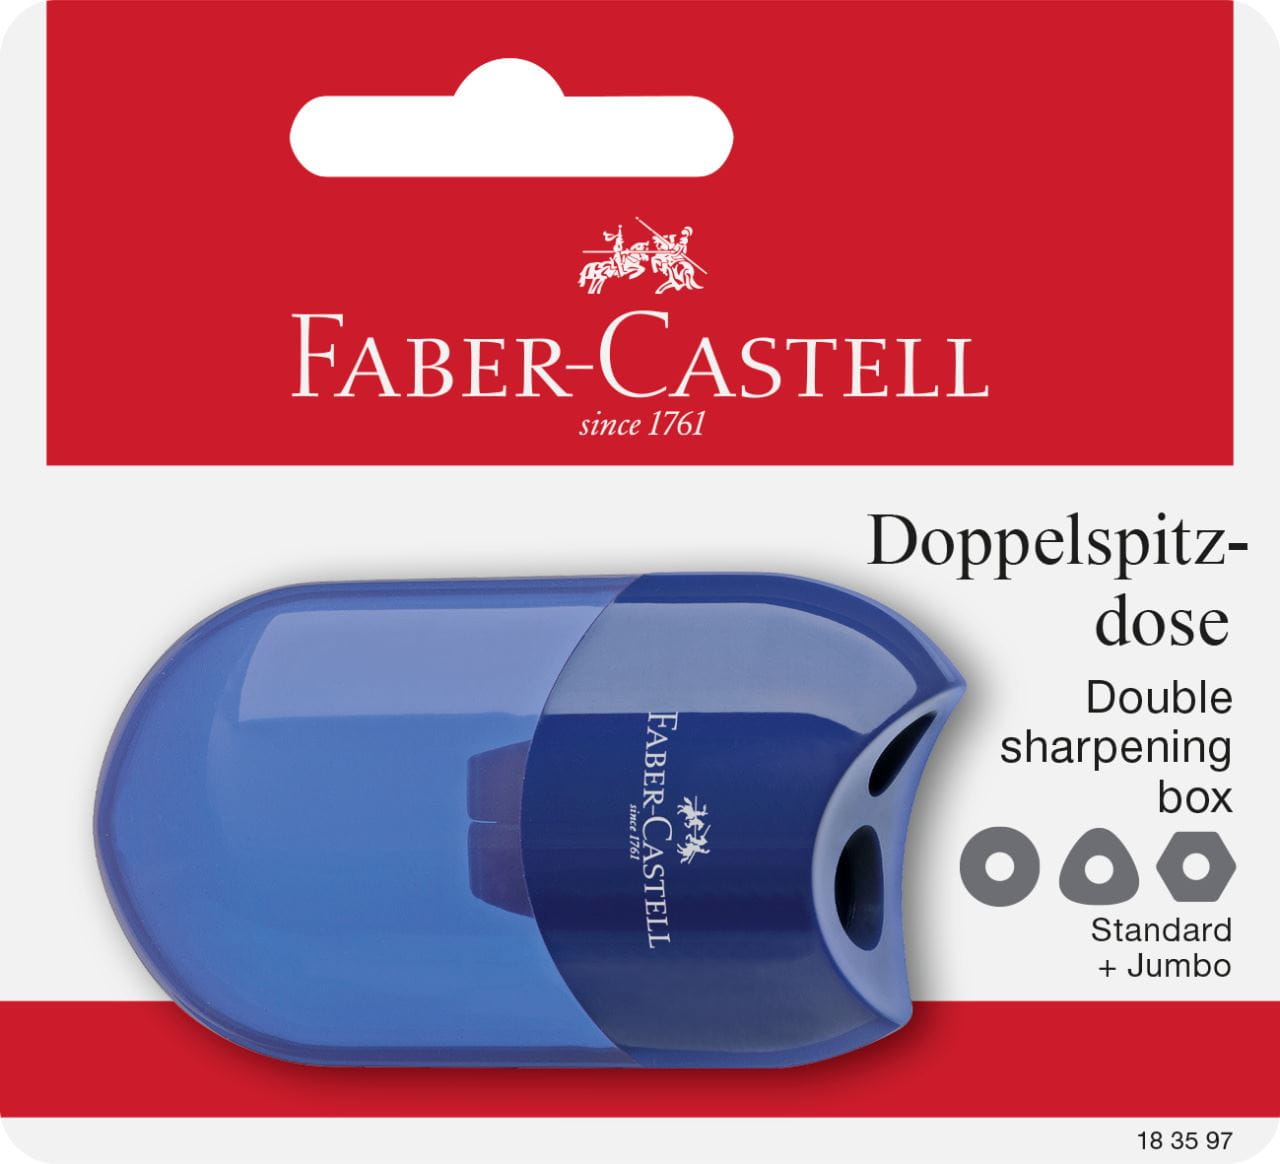 Faber-Castell - Doppelspitzdose, rot/blau, sortiert, 1er Set